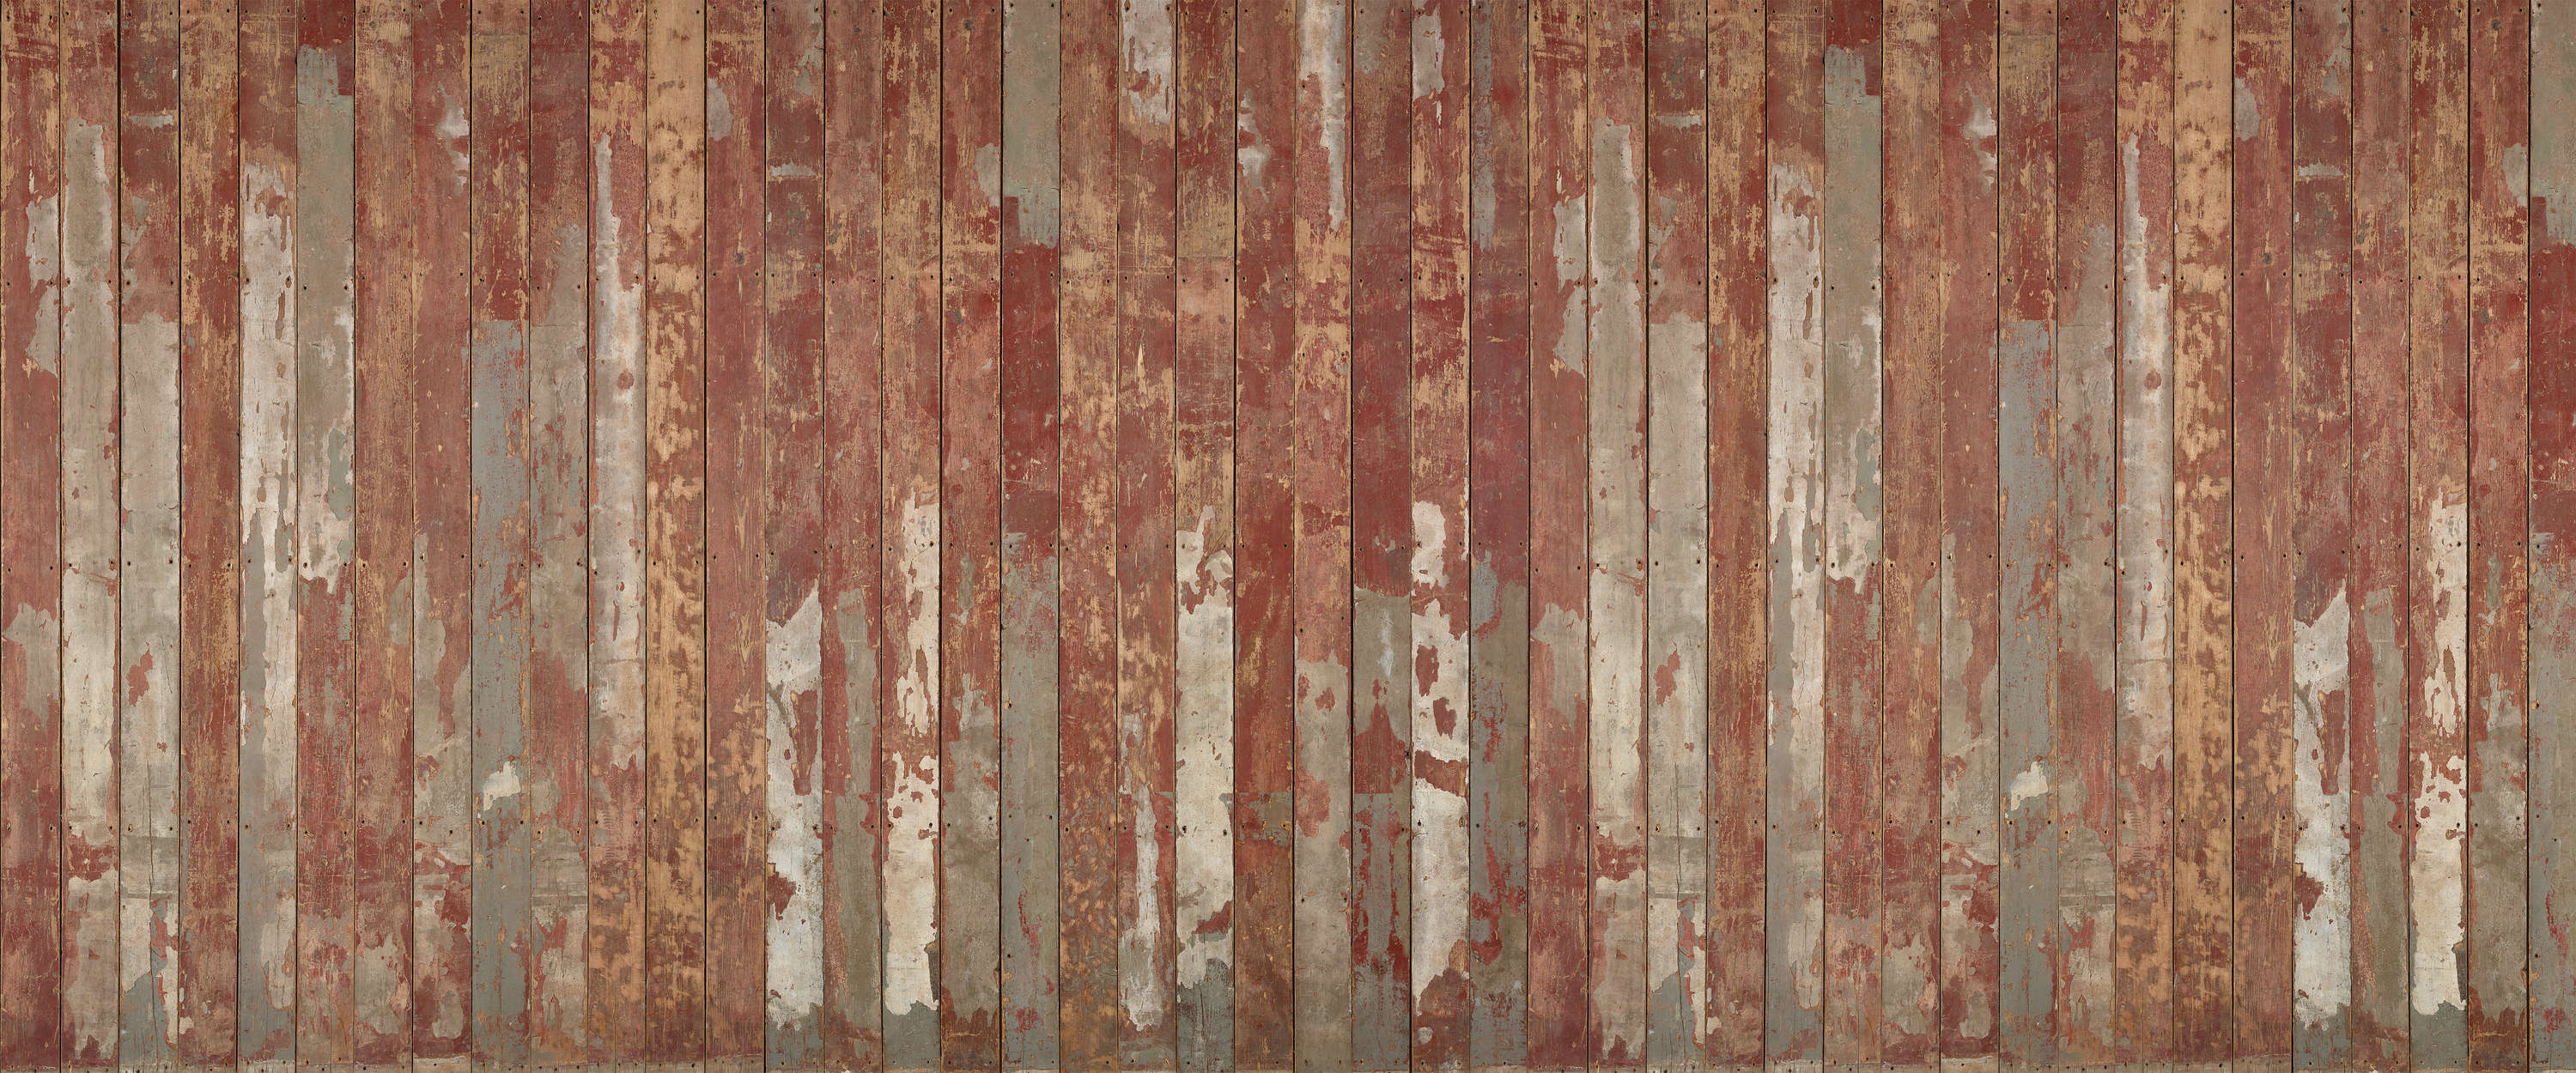             Tavola murale rustica con effetto legno vintage
        